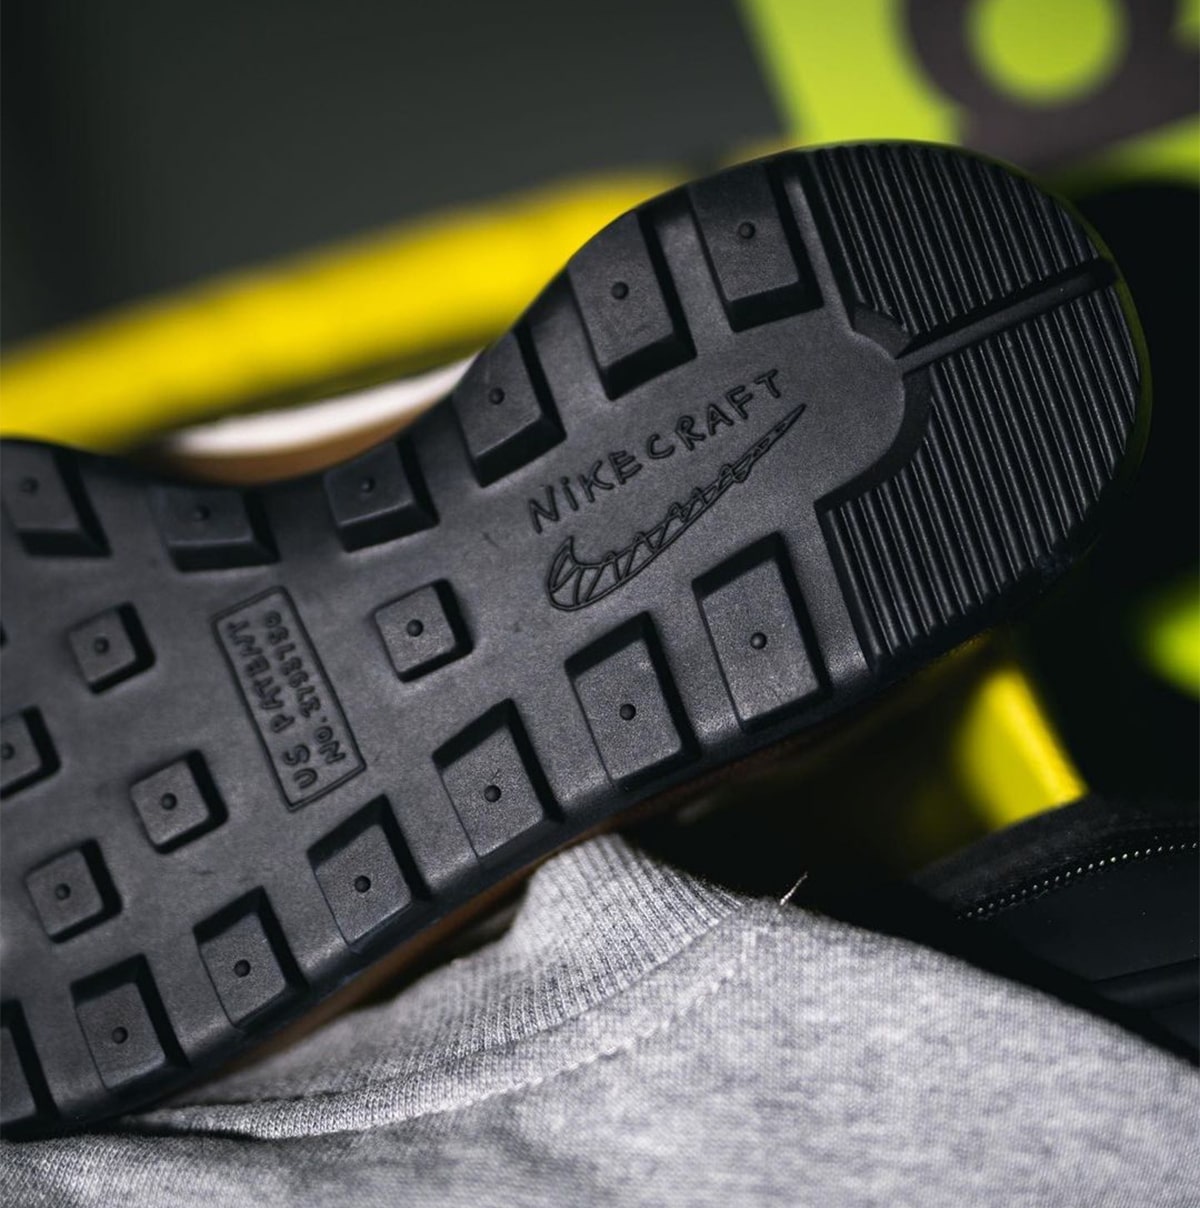 Tom Sachs NikeCraft General Purpose Shoe DA6672-200 Release Date Pricing